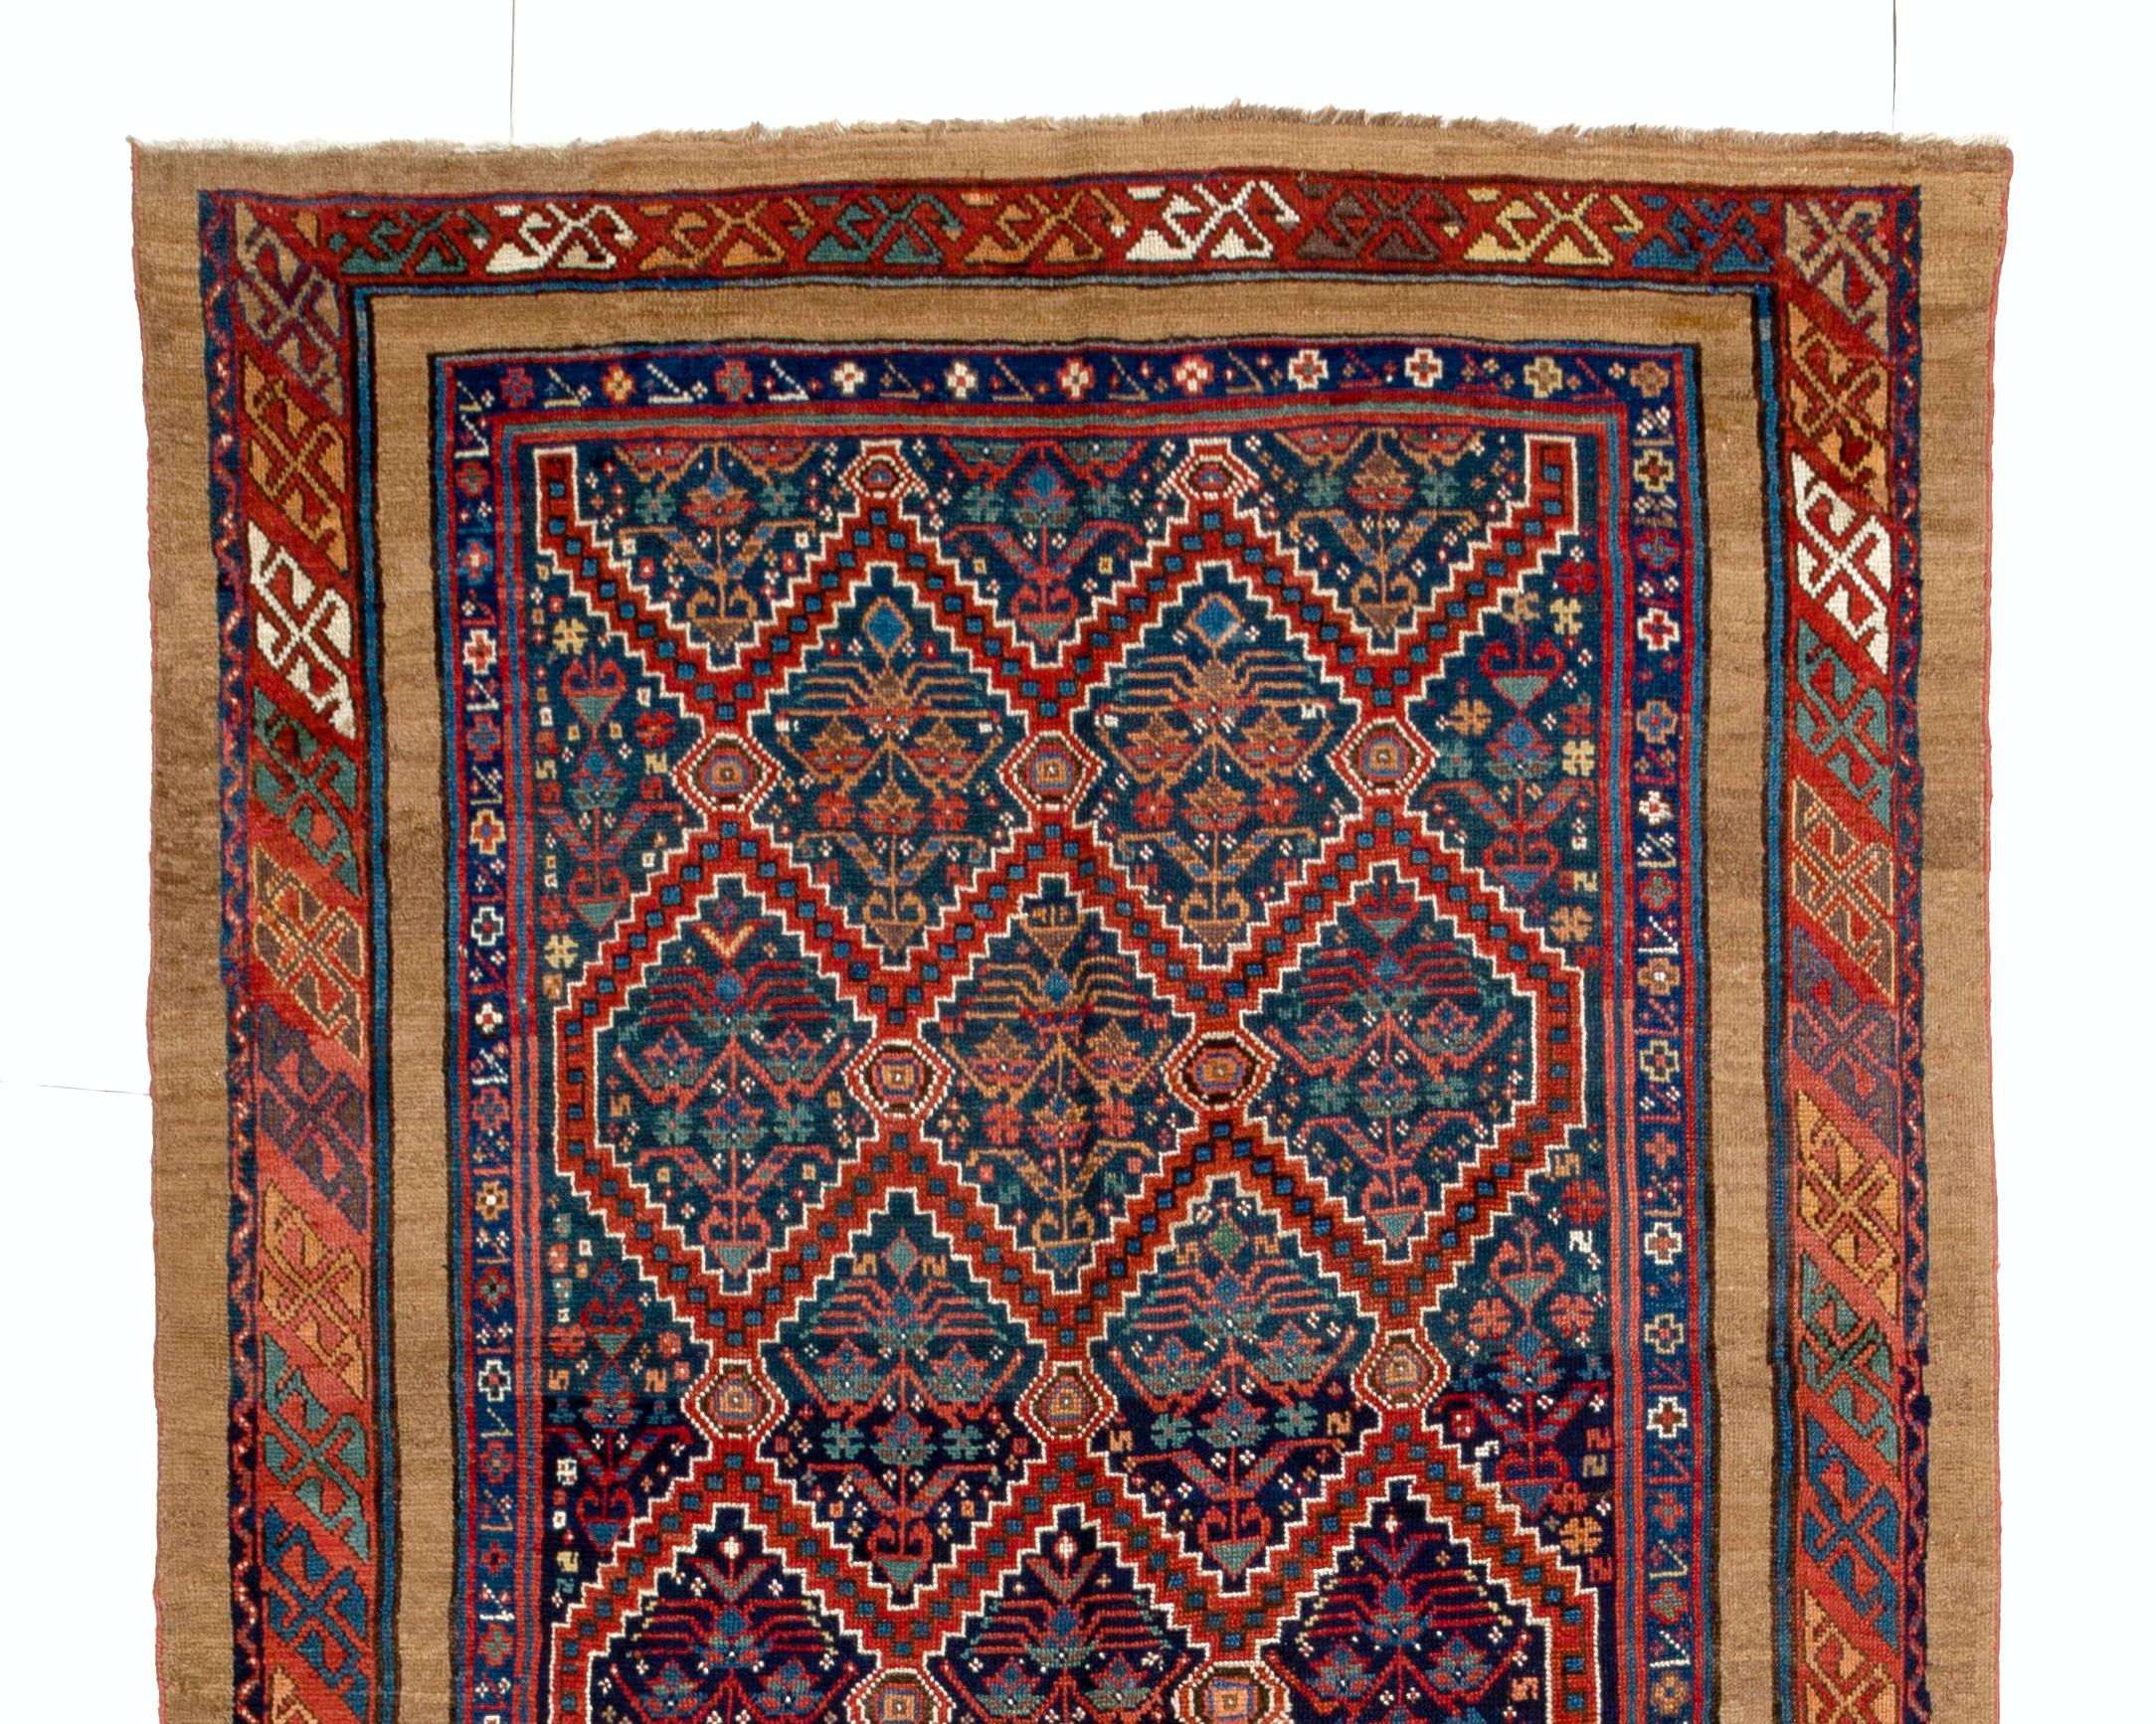 Un fantastique tapis de course en poils de chameau et laine de Serab, nord-ouest de la Perse, vers 1875.
Le tapis est fait de poils de laine moyens sur une base de laine. Il est lourd et repose à plat sur le sol, en très bon état et sans problème.